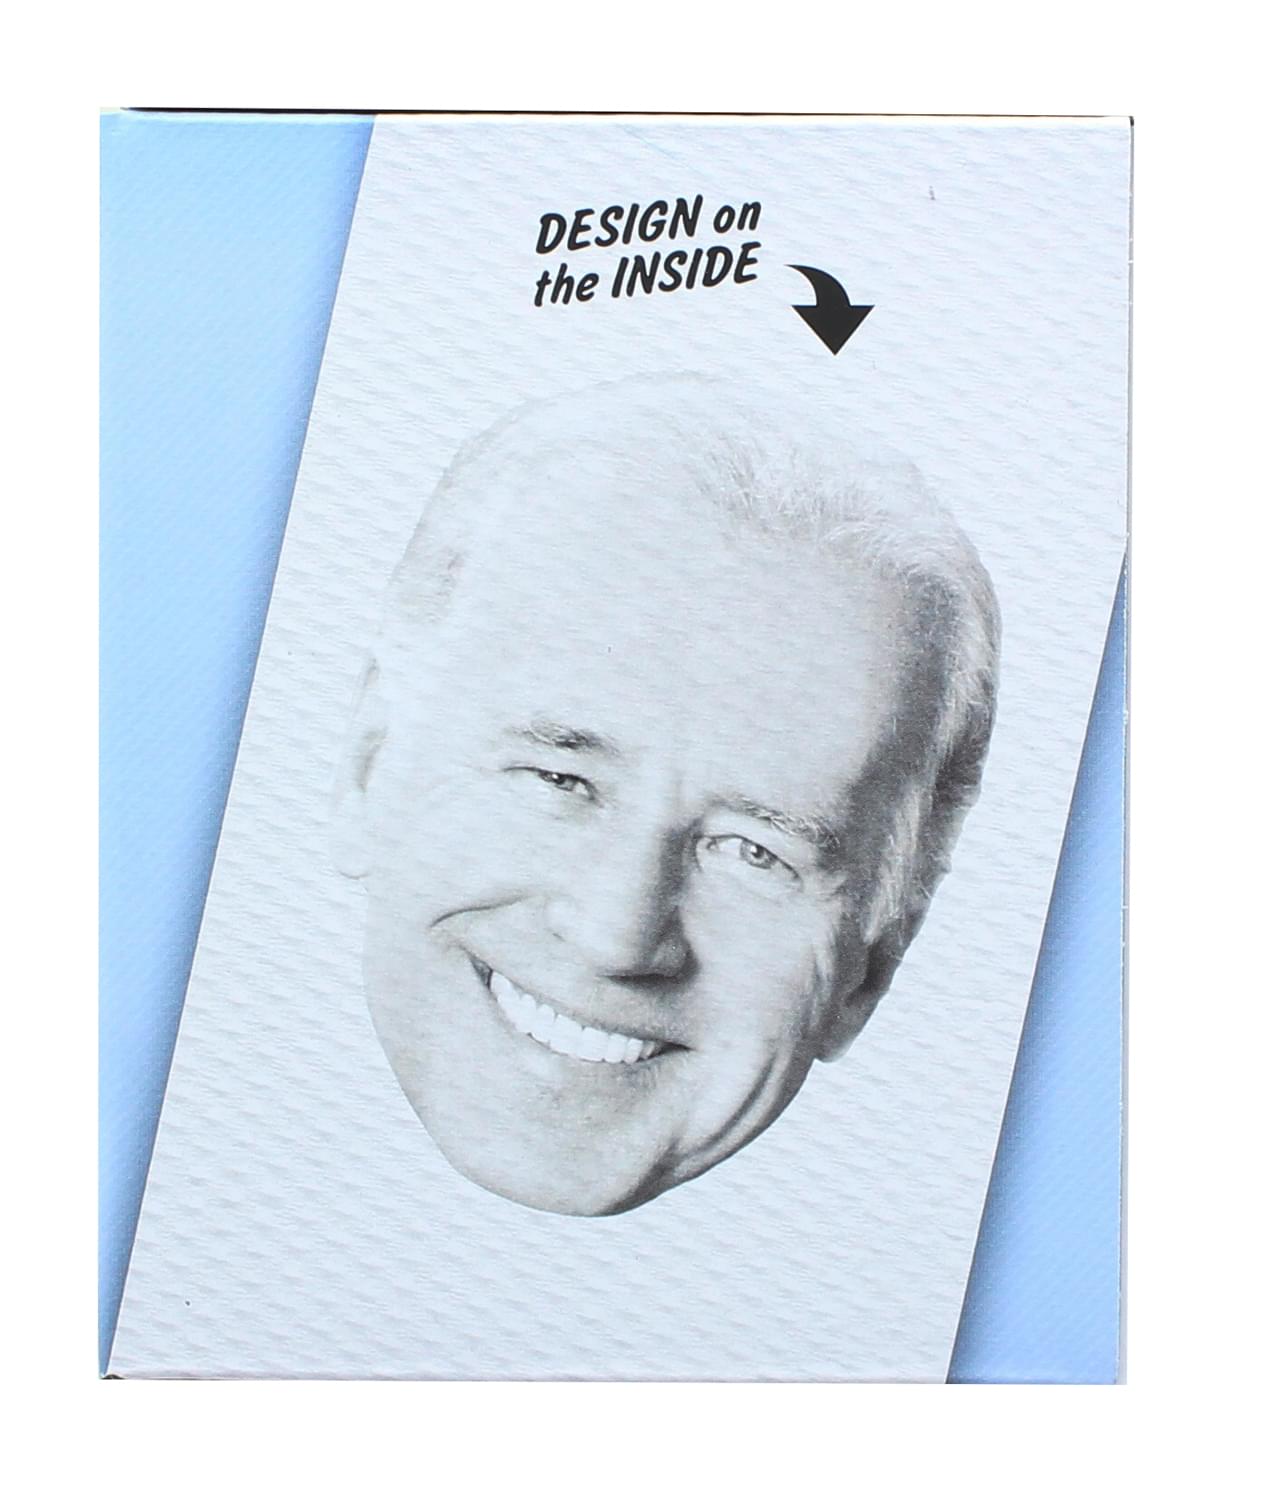 Joe Biden Toilet Paper Roll Craft